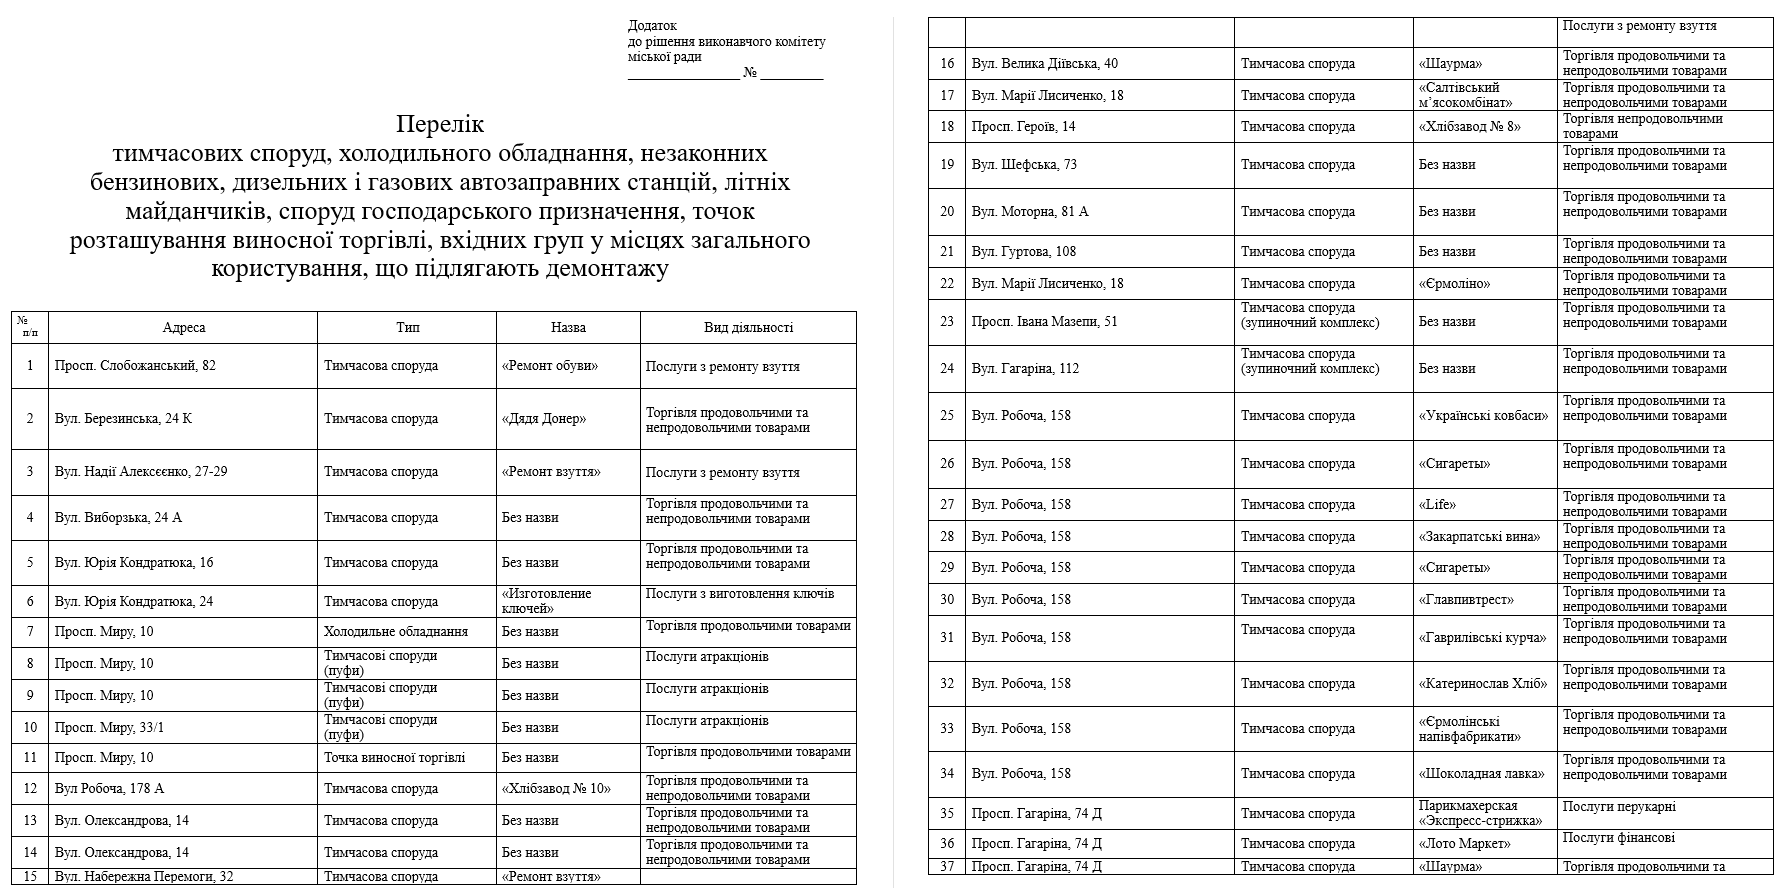 В Днепре снесут еще 62 МАФа: список адресов - рис. 1